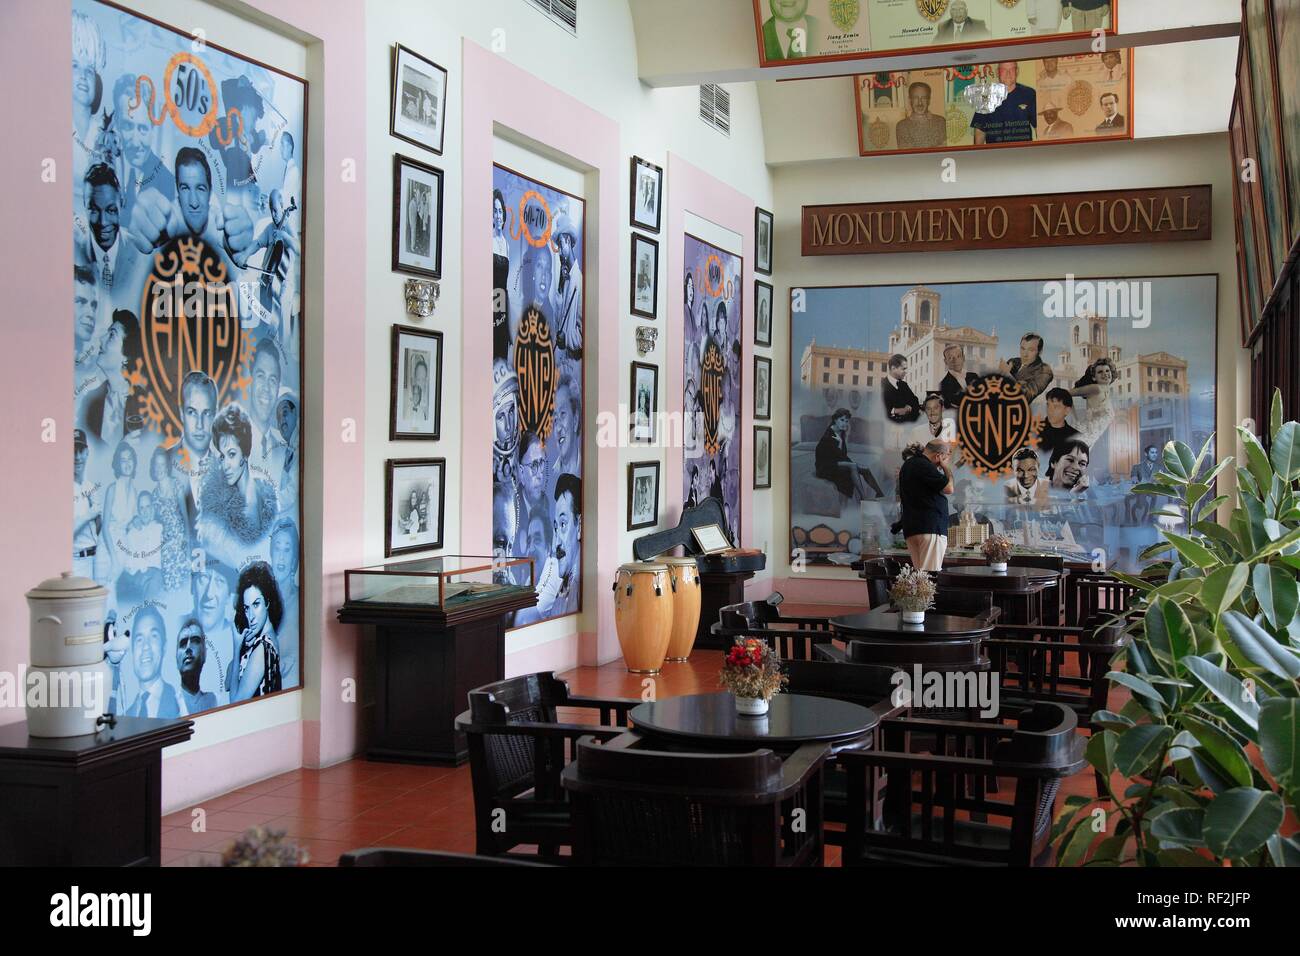 Monumente Nacional, exposition permanente dans le bar de l'Hôtel Nacional de La Havane, Cuba, Caraïbes Banque D'Images